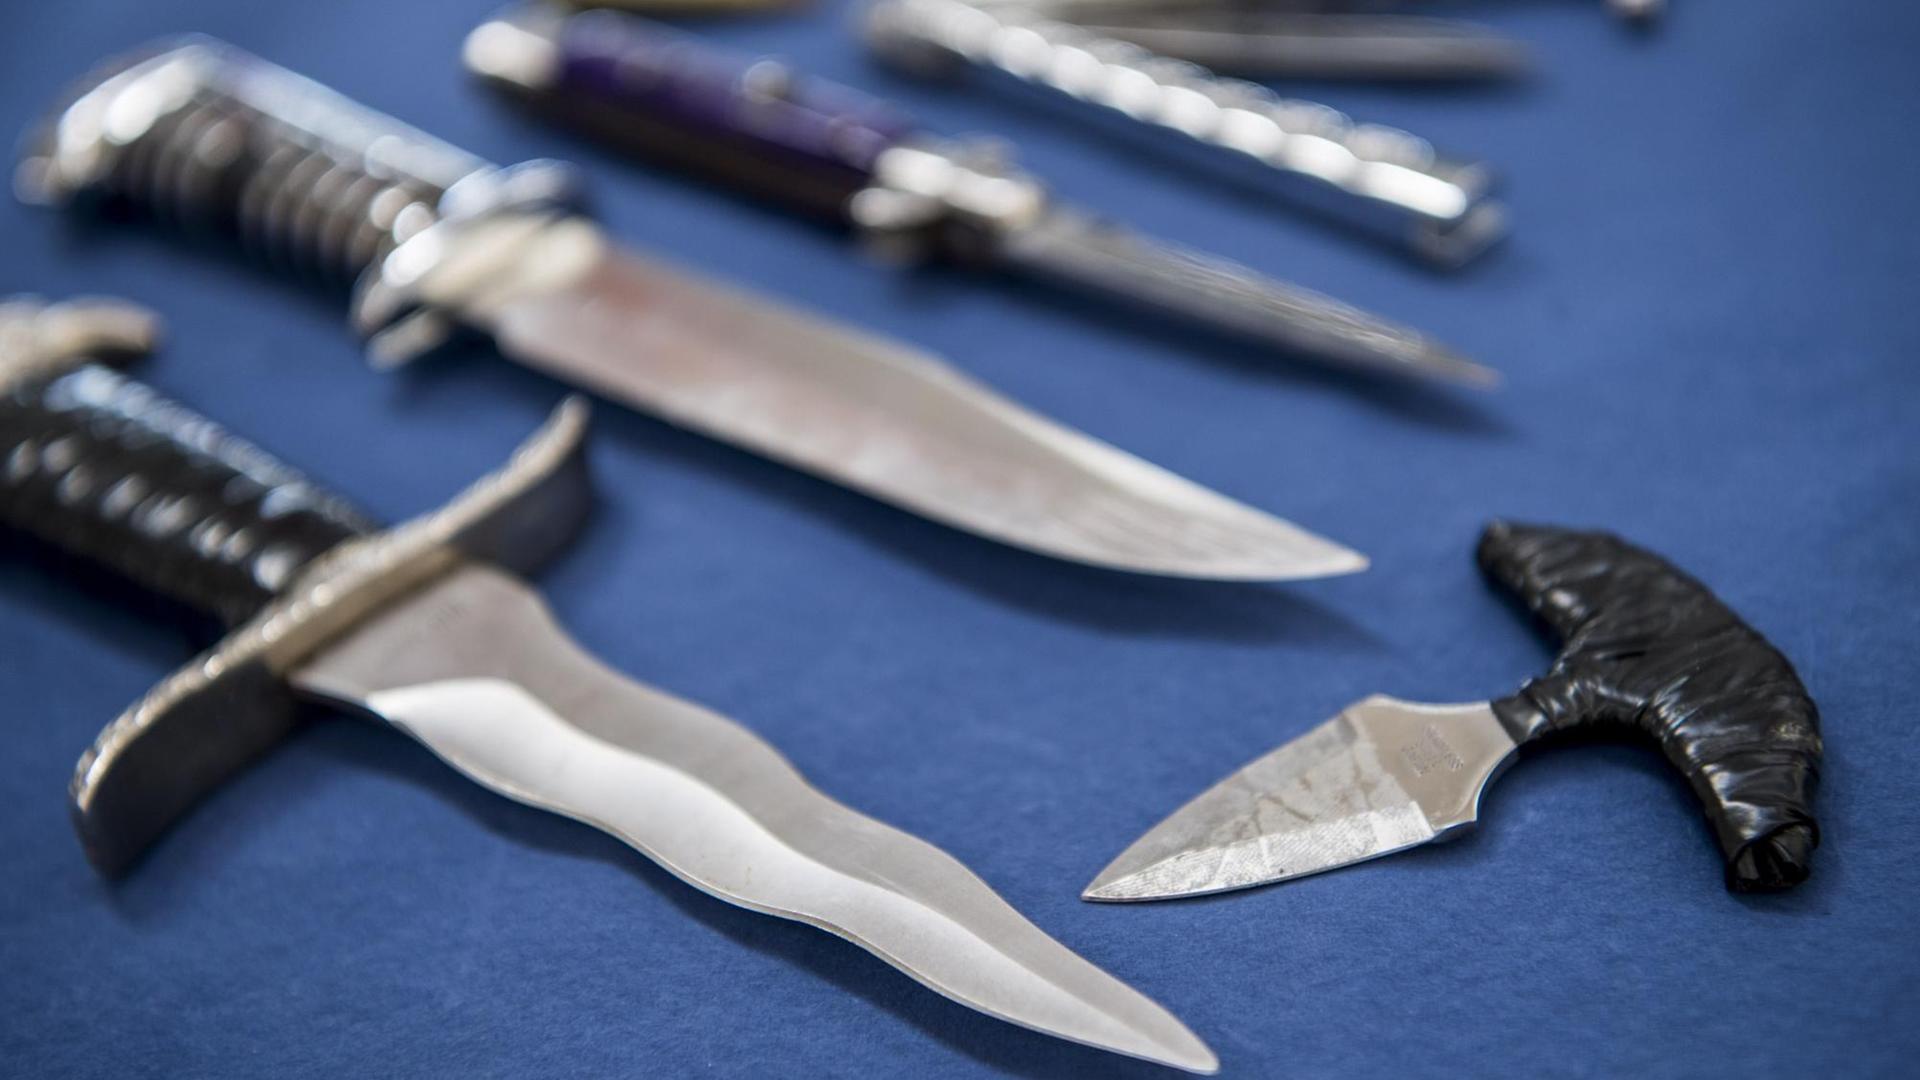 Mehrere Messer mit einer Klingenlänge von mehr als sechs Zentimetern und Faustmesser liegen auf einem Tisch.